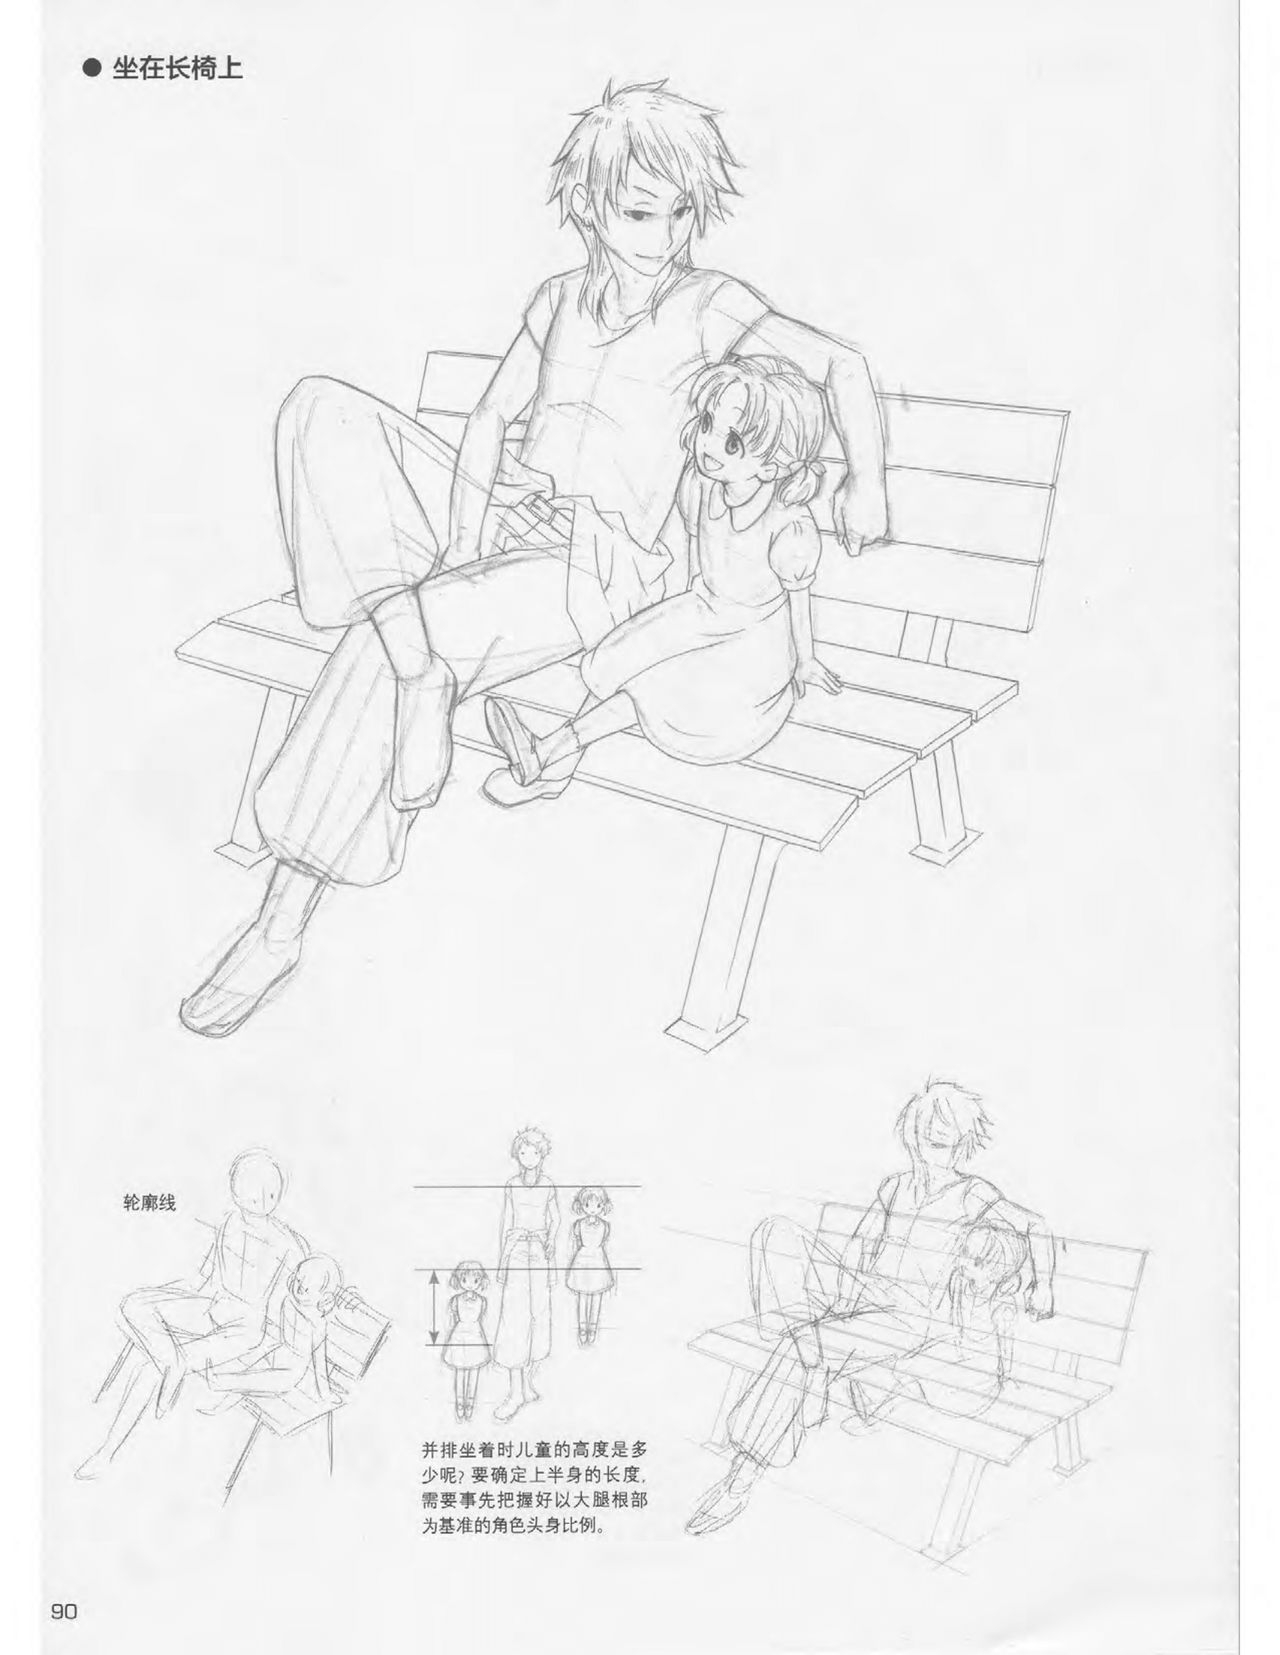 Japanese Manga Master Lecture 3: Lin Akira and Kakumaru Maru Talk About Glamorous Character Modeling 90